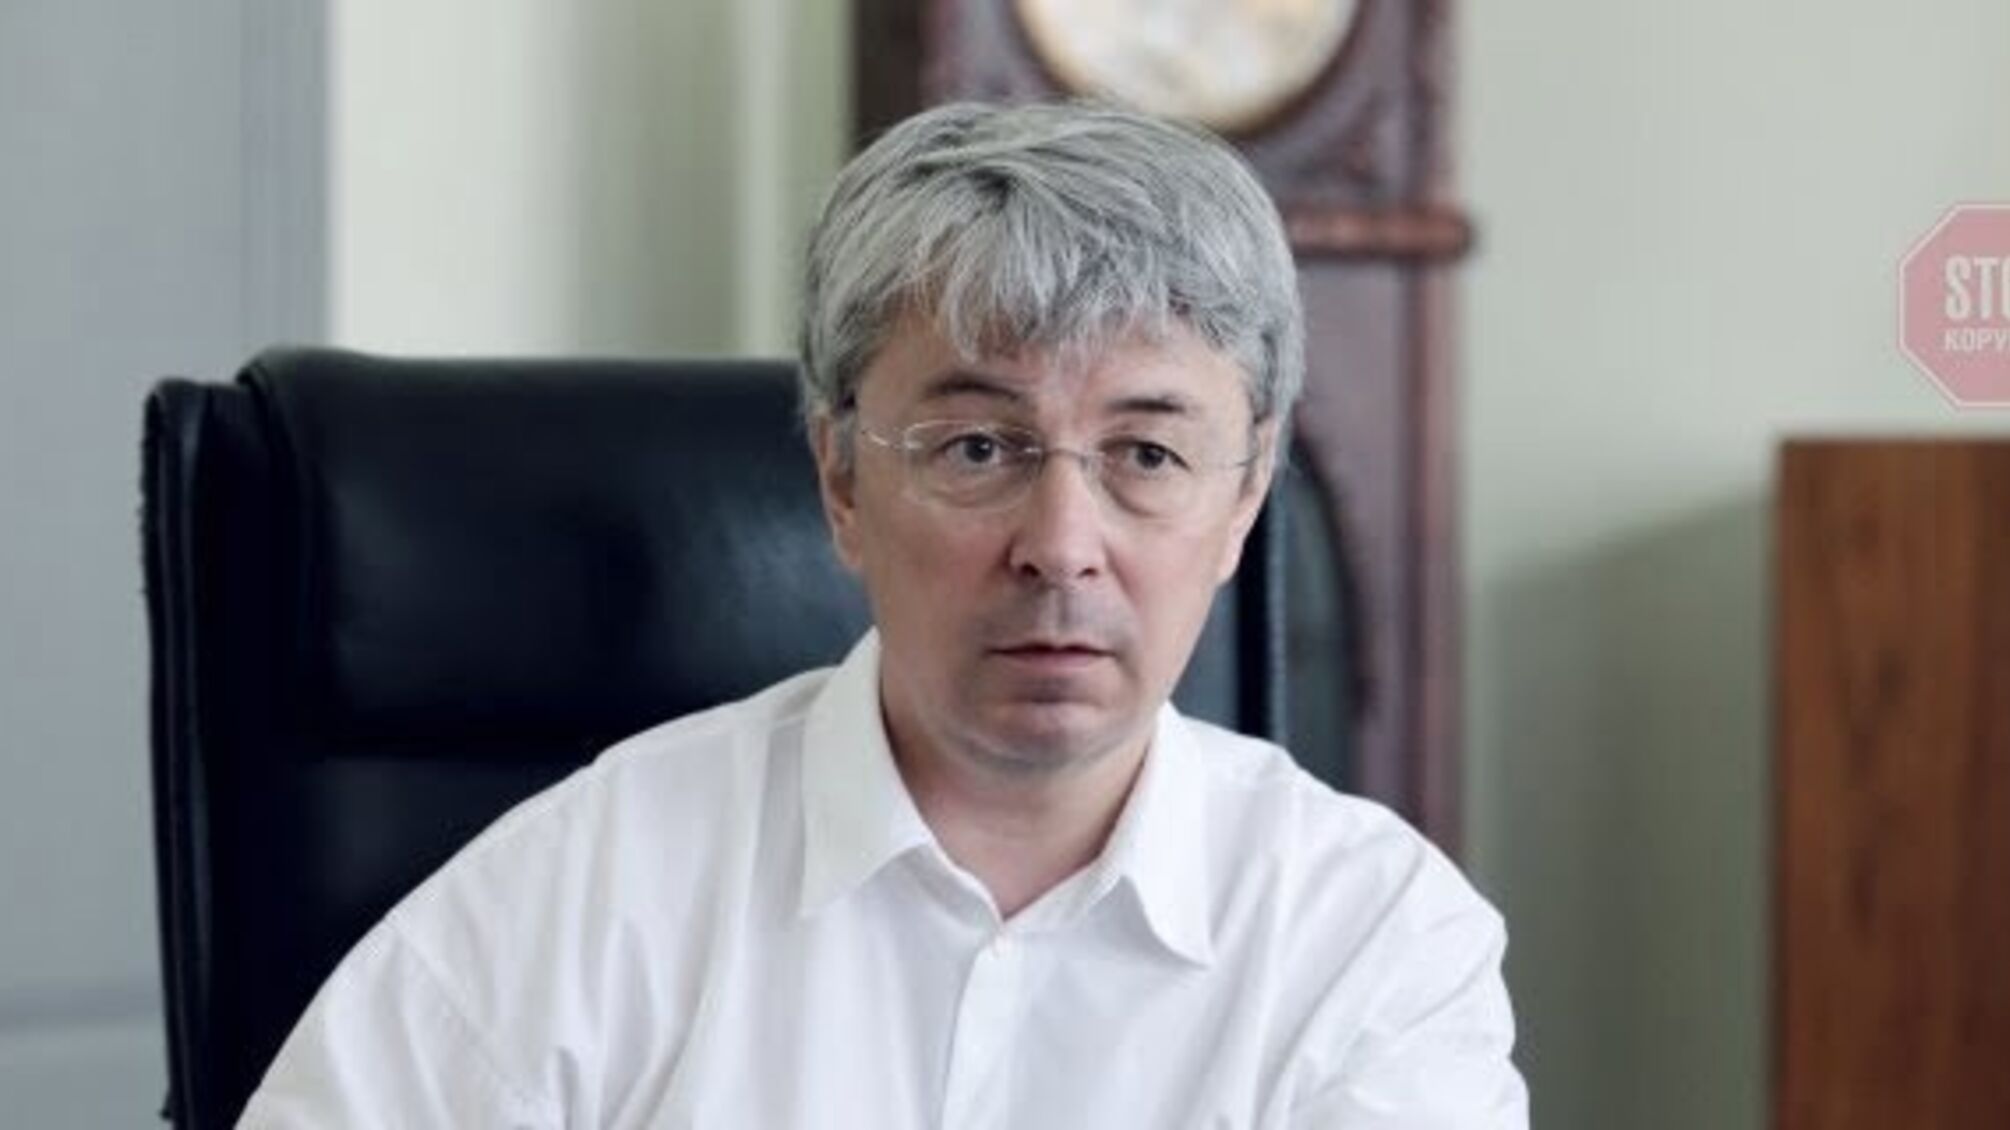 КМДА: Мінкульт без пояснень заборонив Києву проводити пам’ятний захід 9 травня